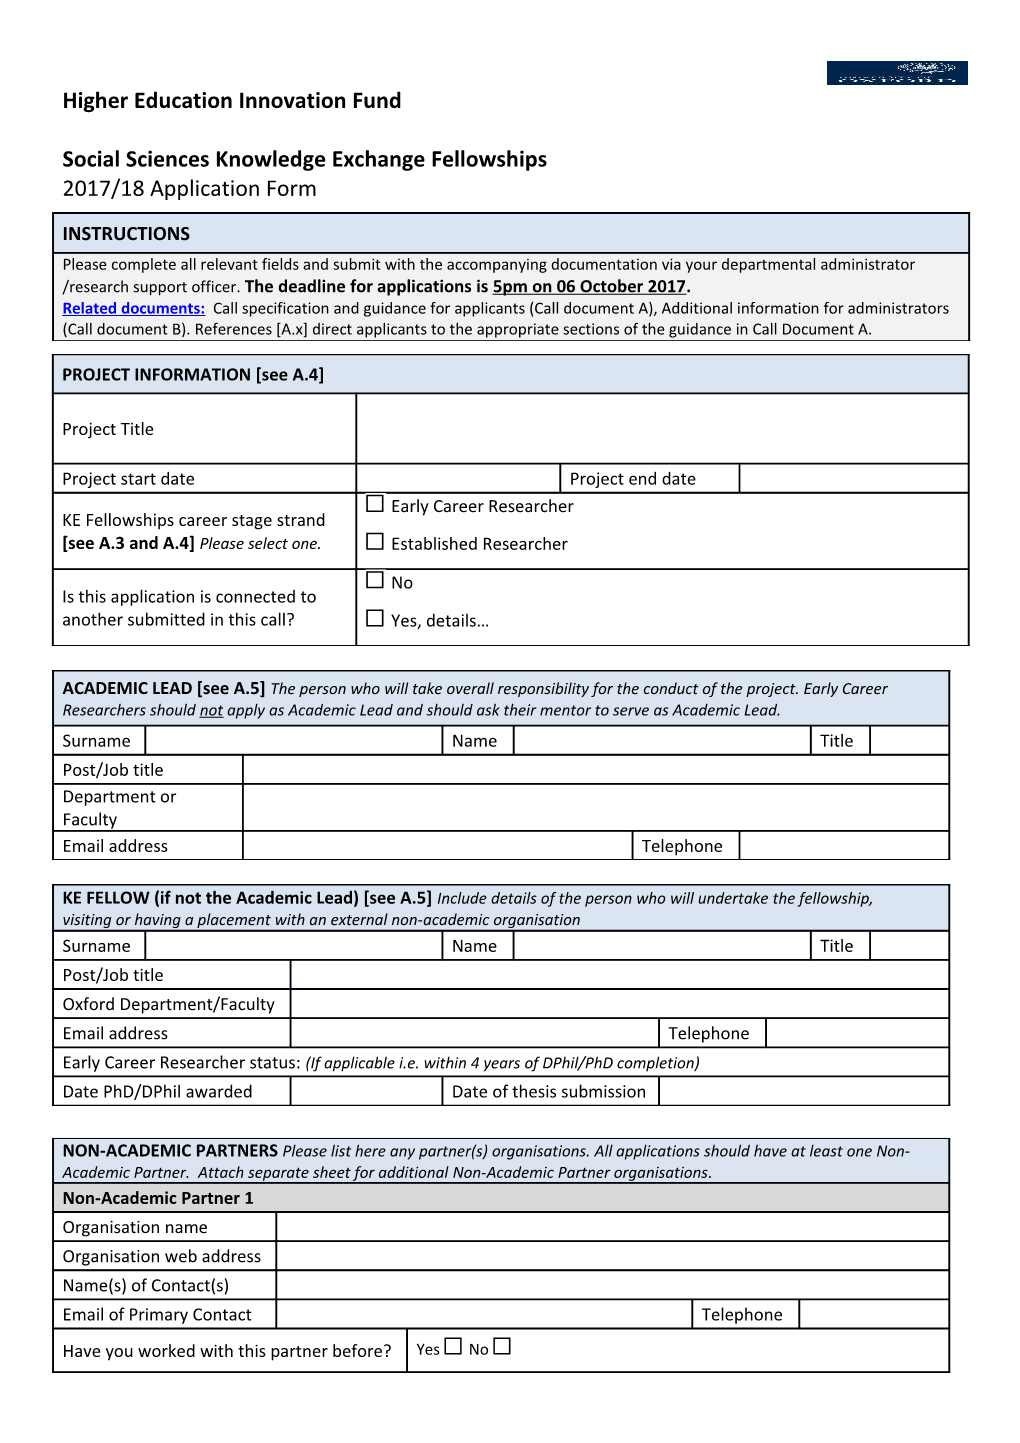 CLOSED - ESRC IAA Application Form